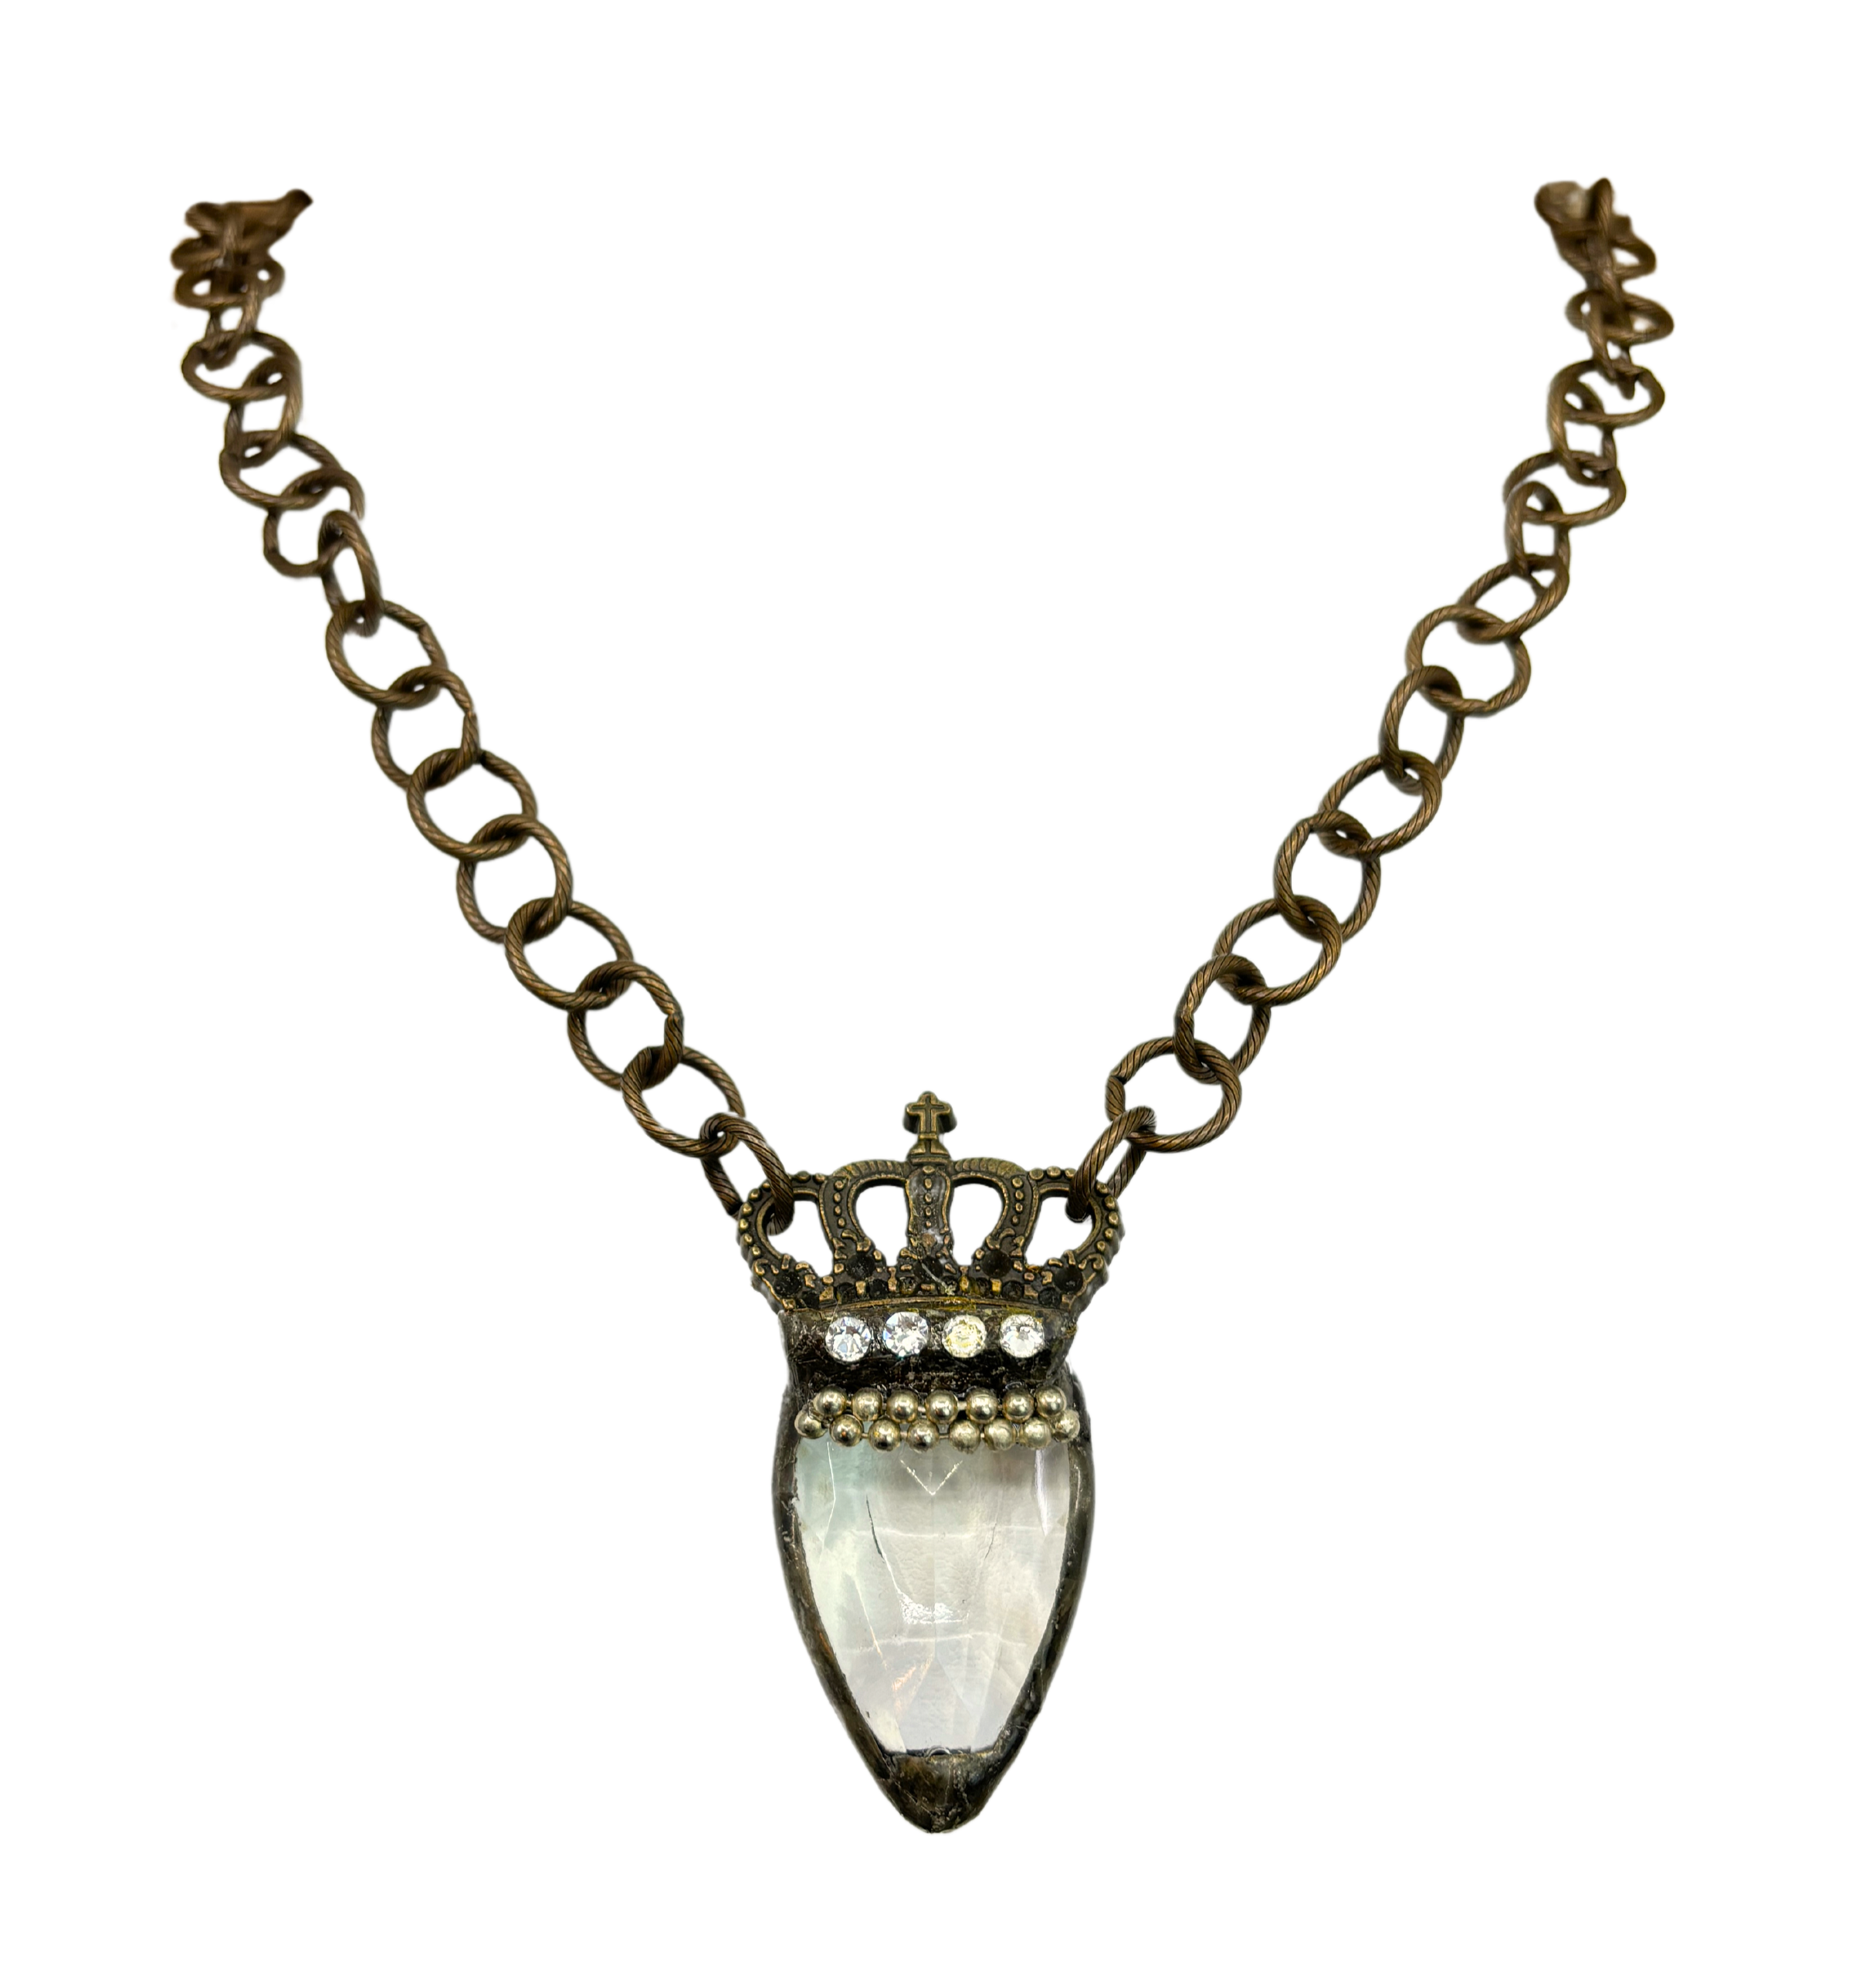 Vintage Crystal Soldered Crown Necklace